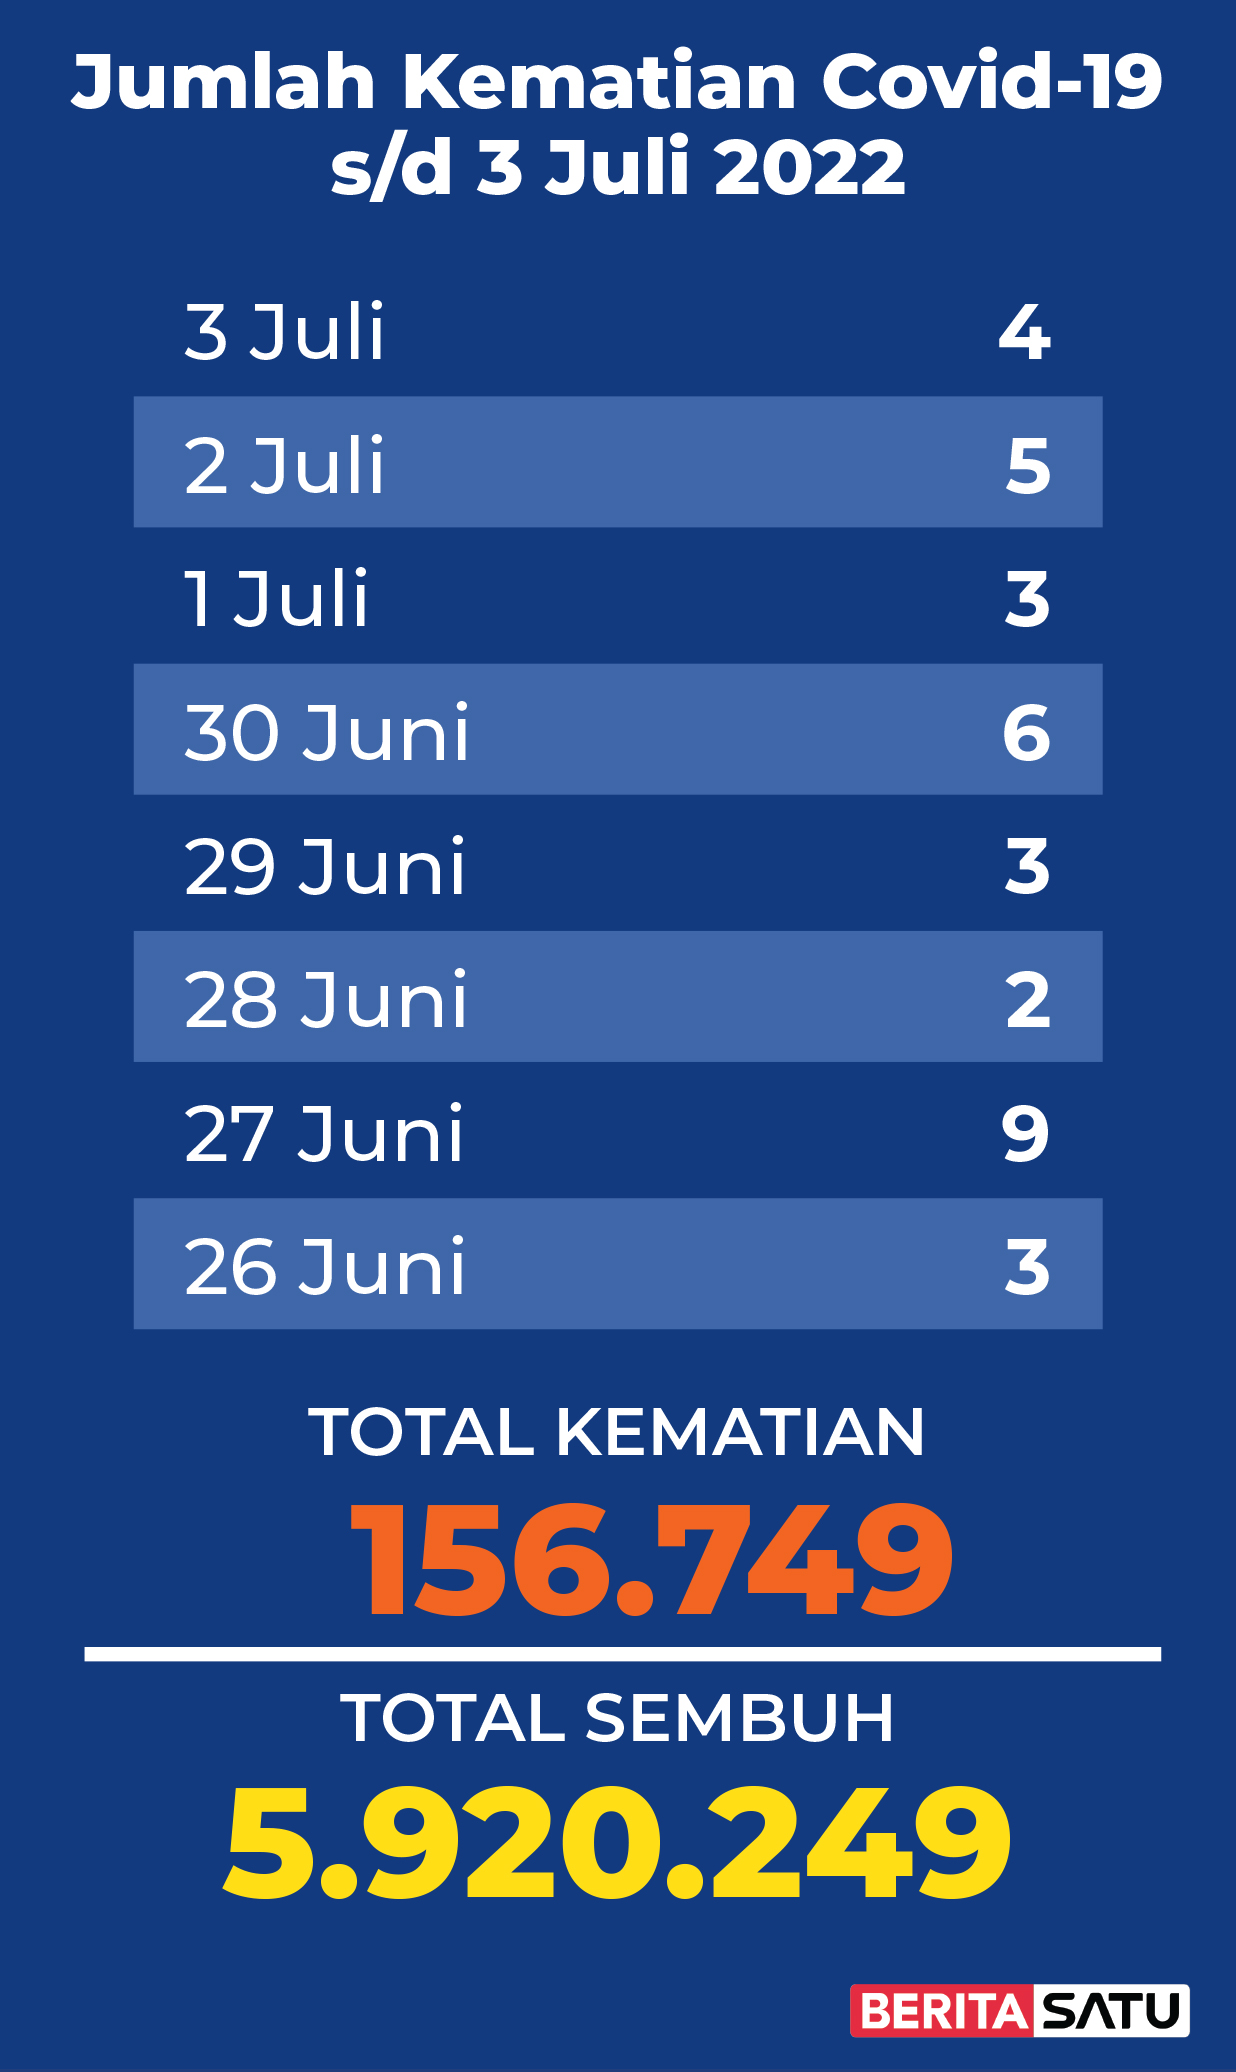 Data Kematian Covid-19 di Indonesia sampai 3 Juli 2022